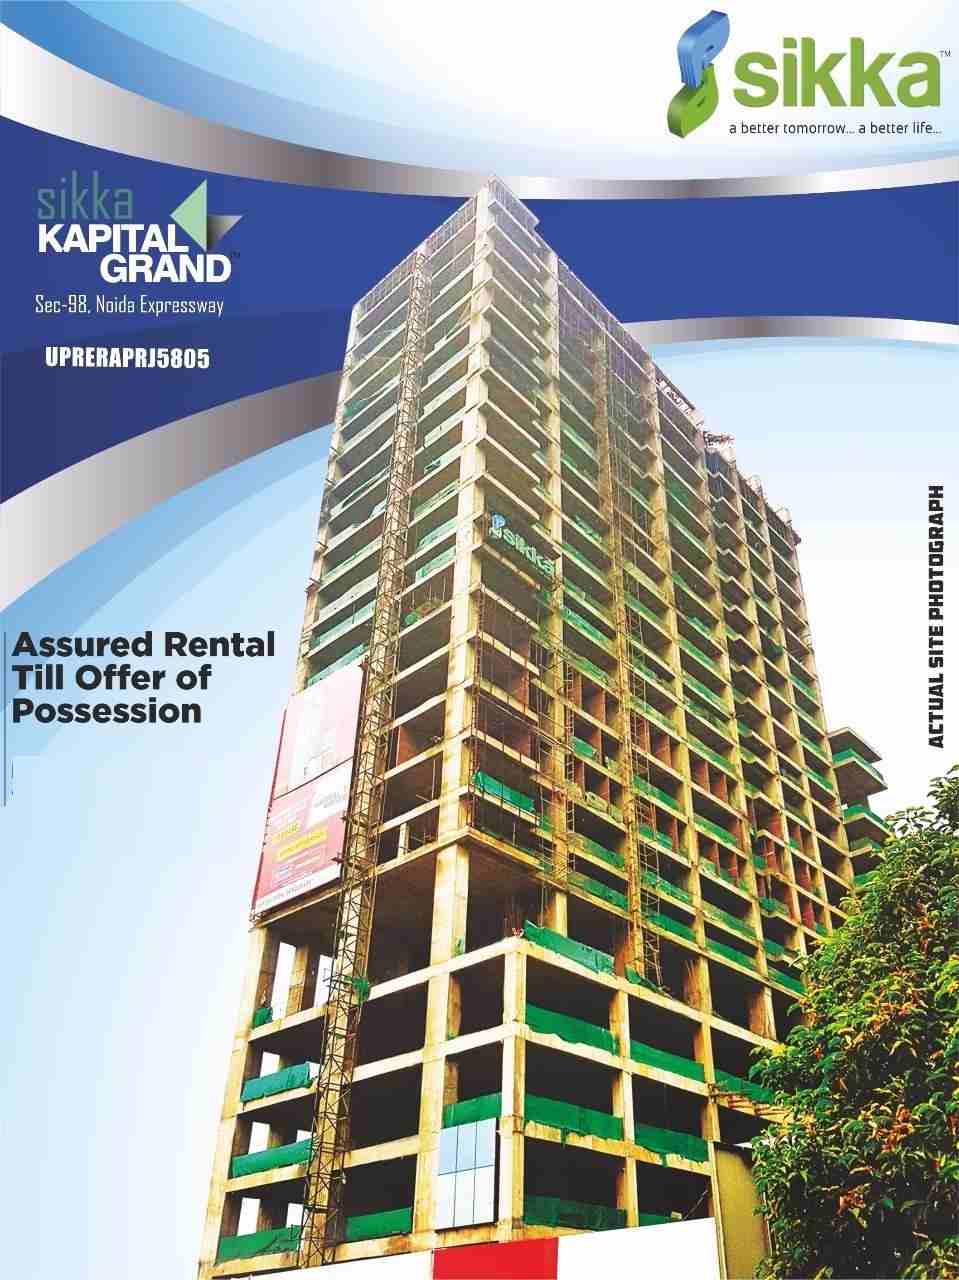 Assured rental till offer of possession at Sikka Kapital Grand in Noida